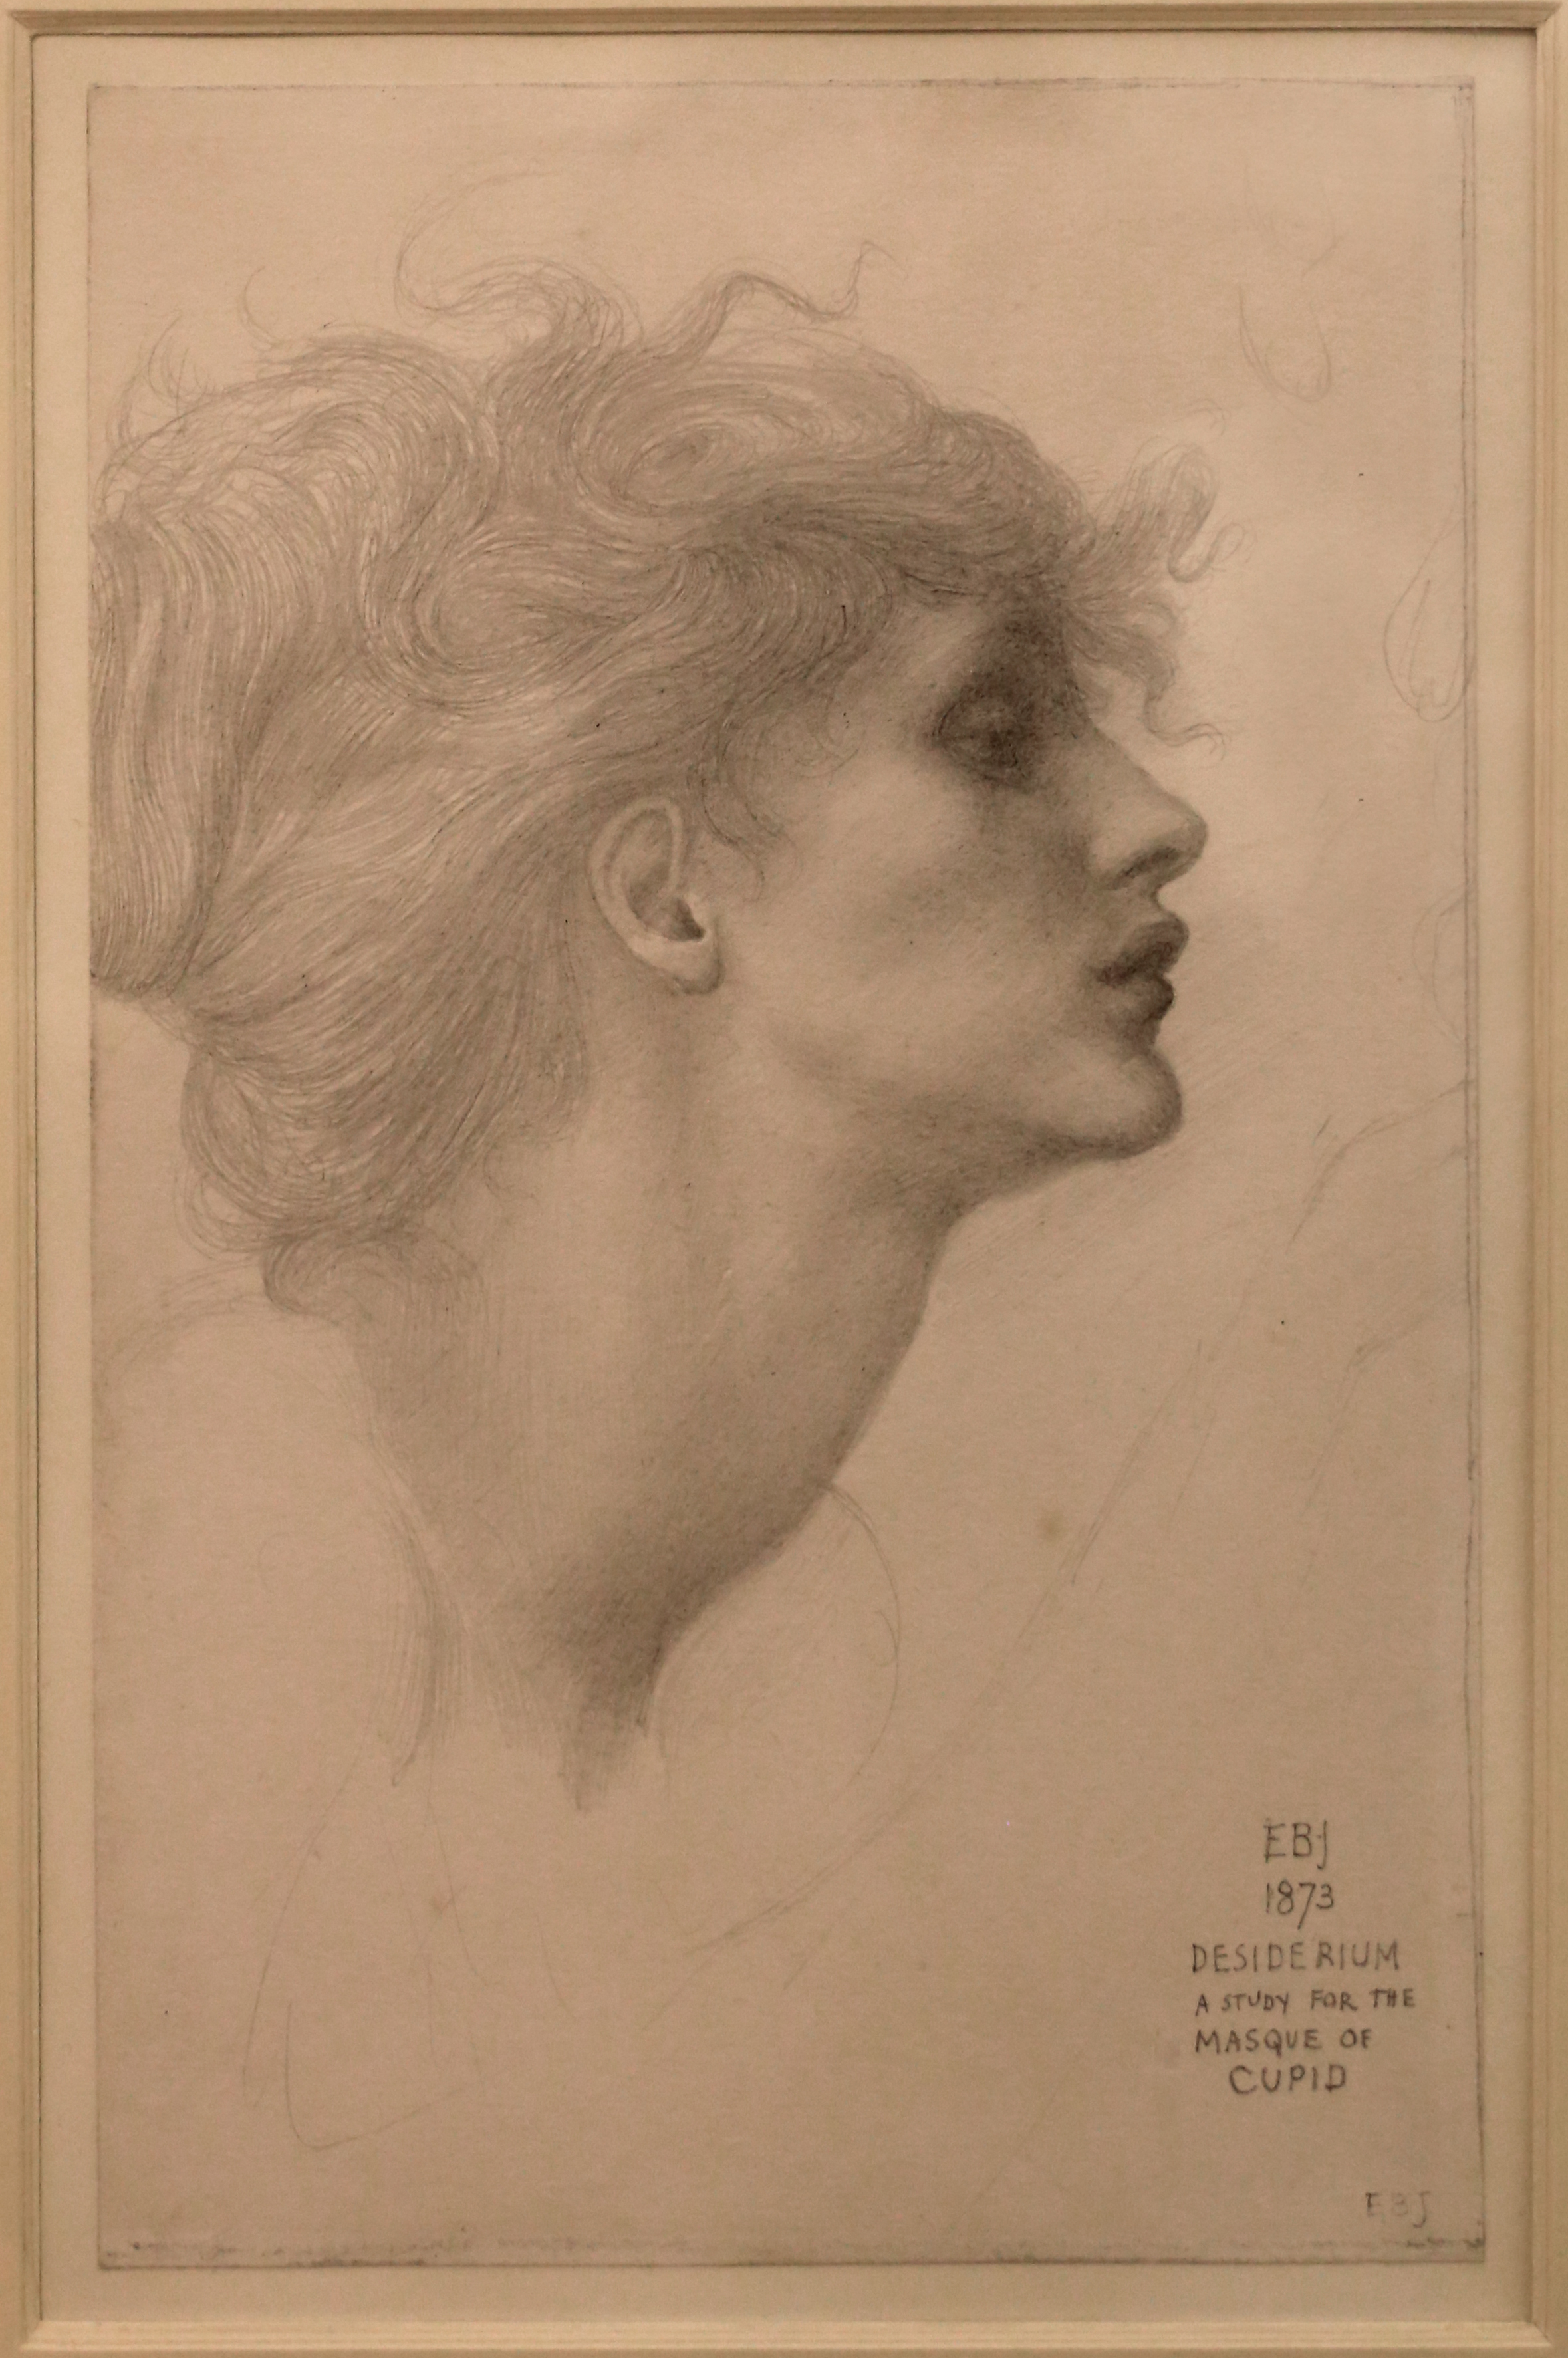 File:Edward coley burne-jones, desiderium, 1873.jpg